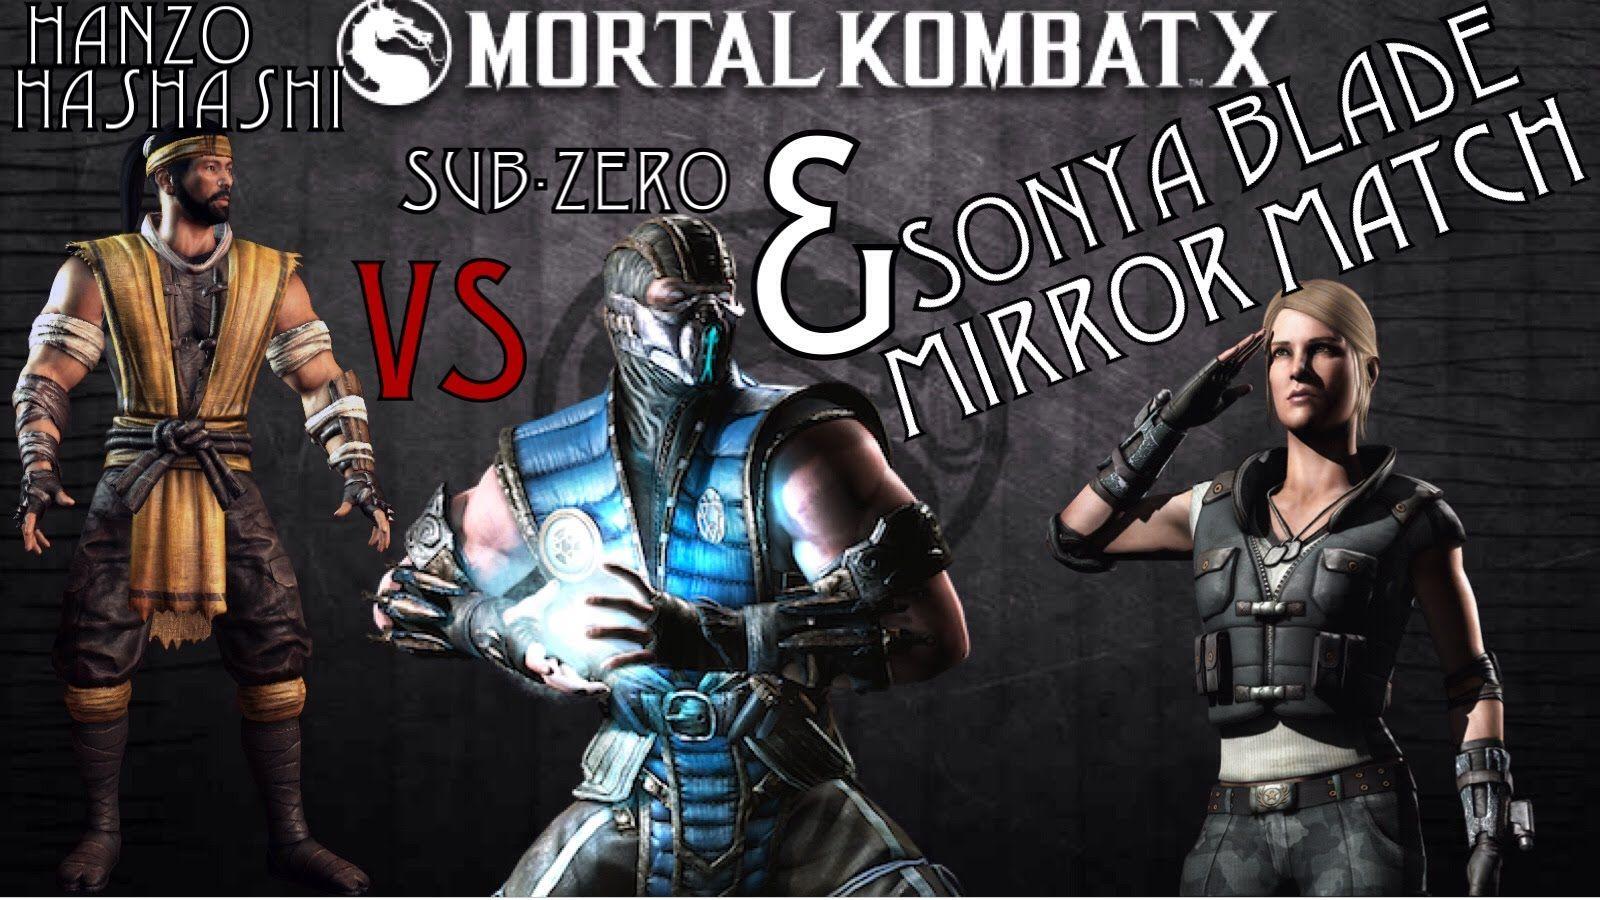 Mortal Kombat X Hanzo Hasashi (Scorpion) VS Sub Zero & Sonya Blade